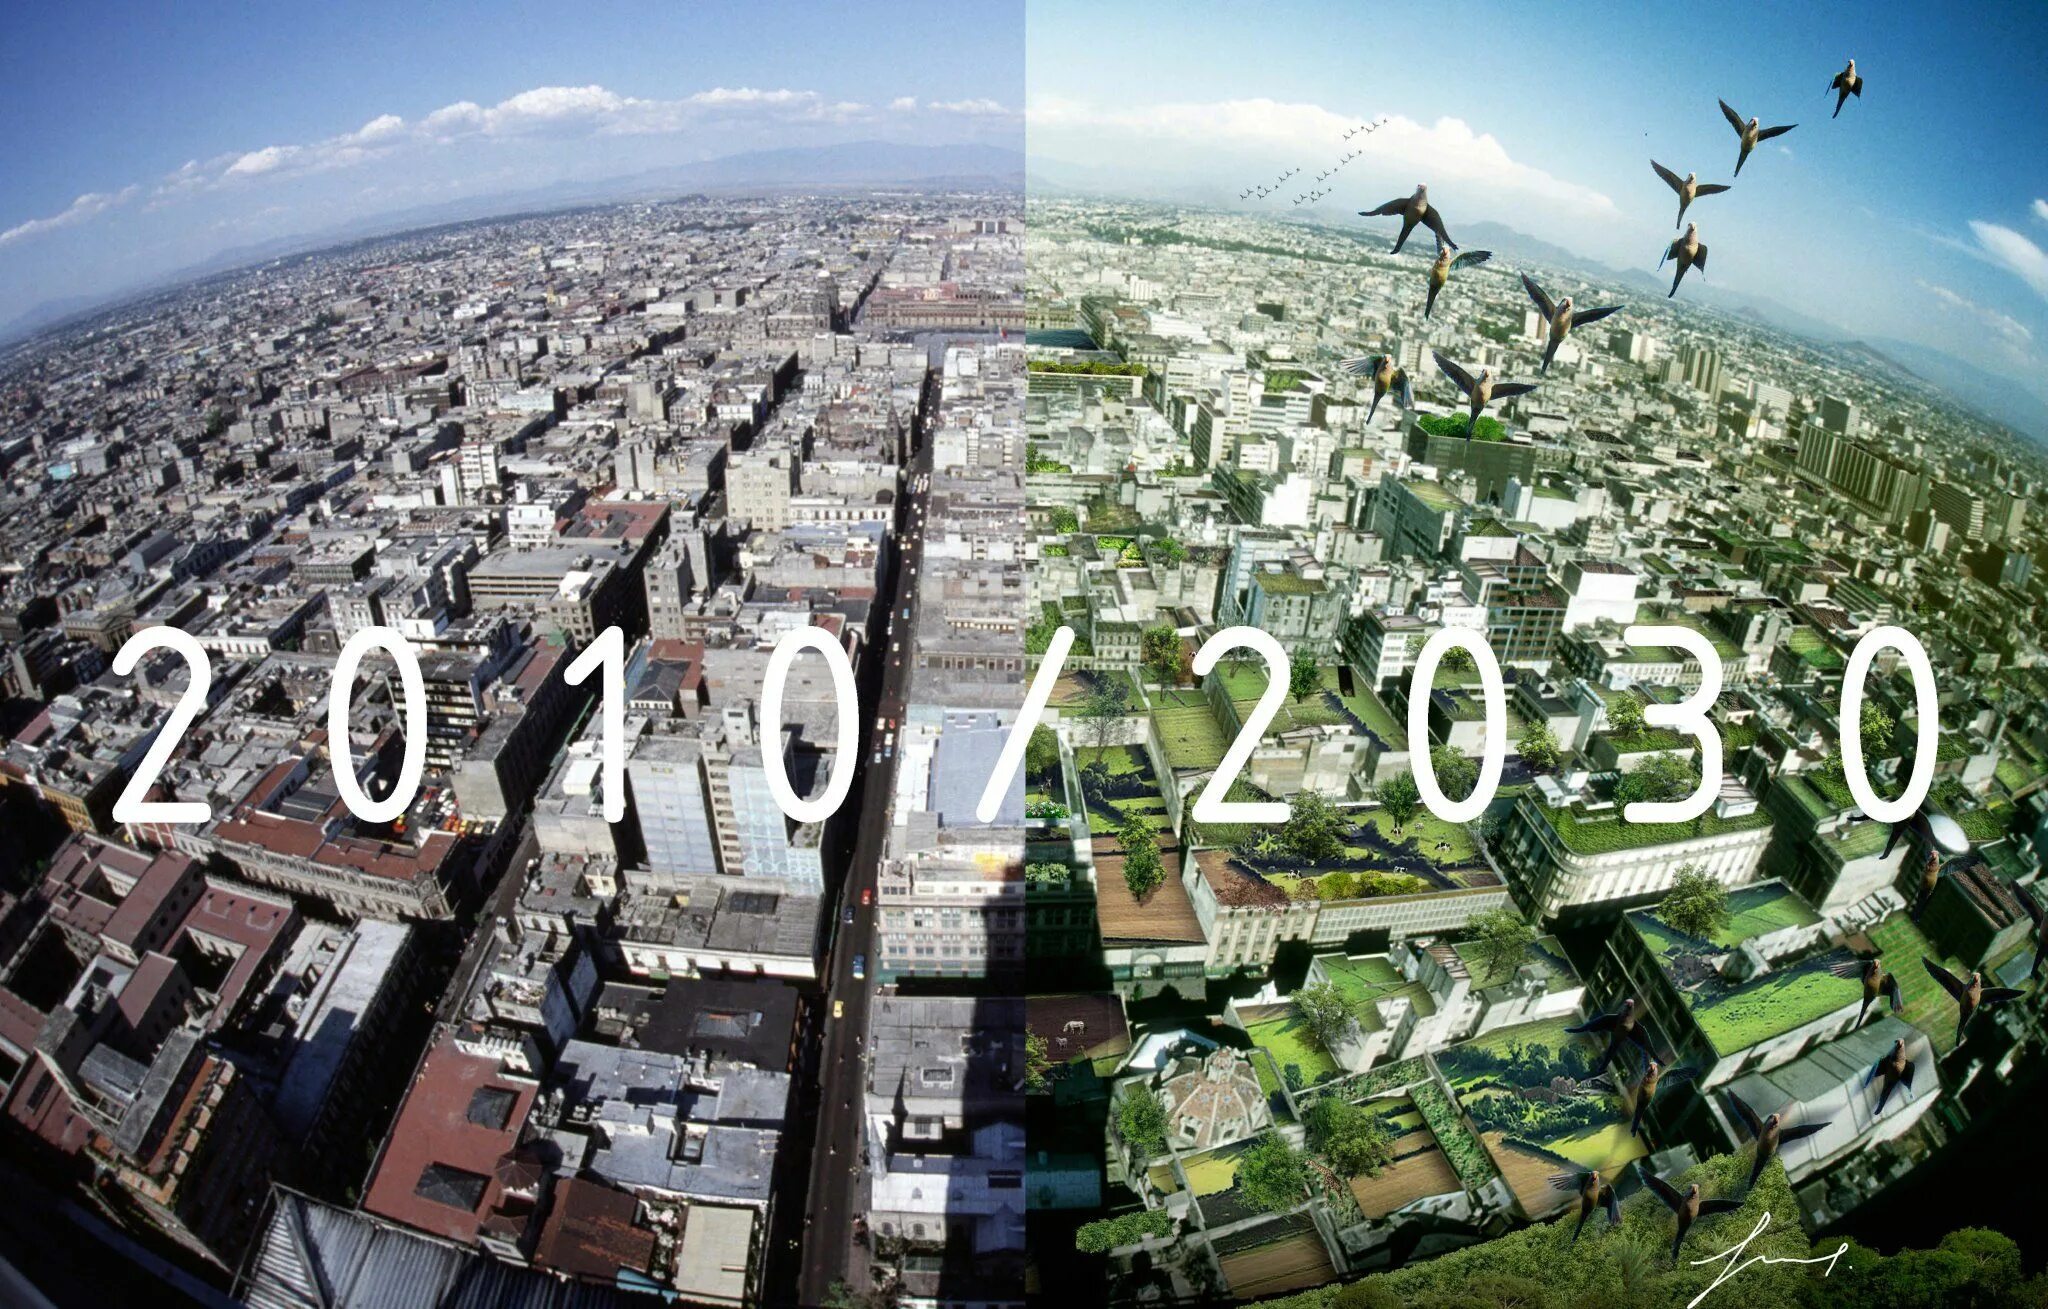 Земля буд. 2050 Год будущее. Город 2030 года. Будущее 2030. 2050 Год будущее земля.